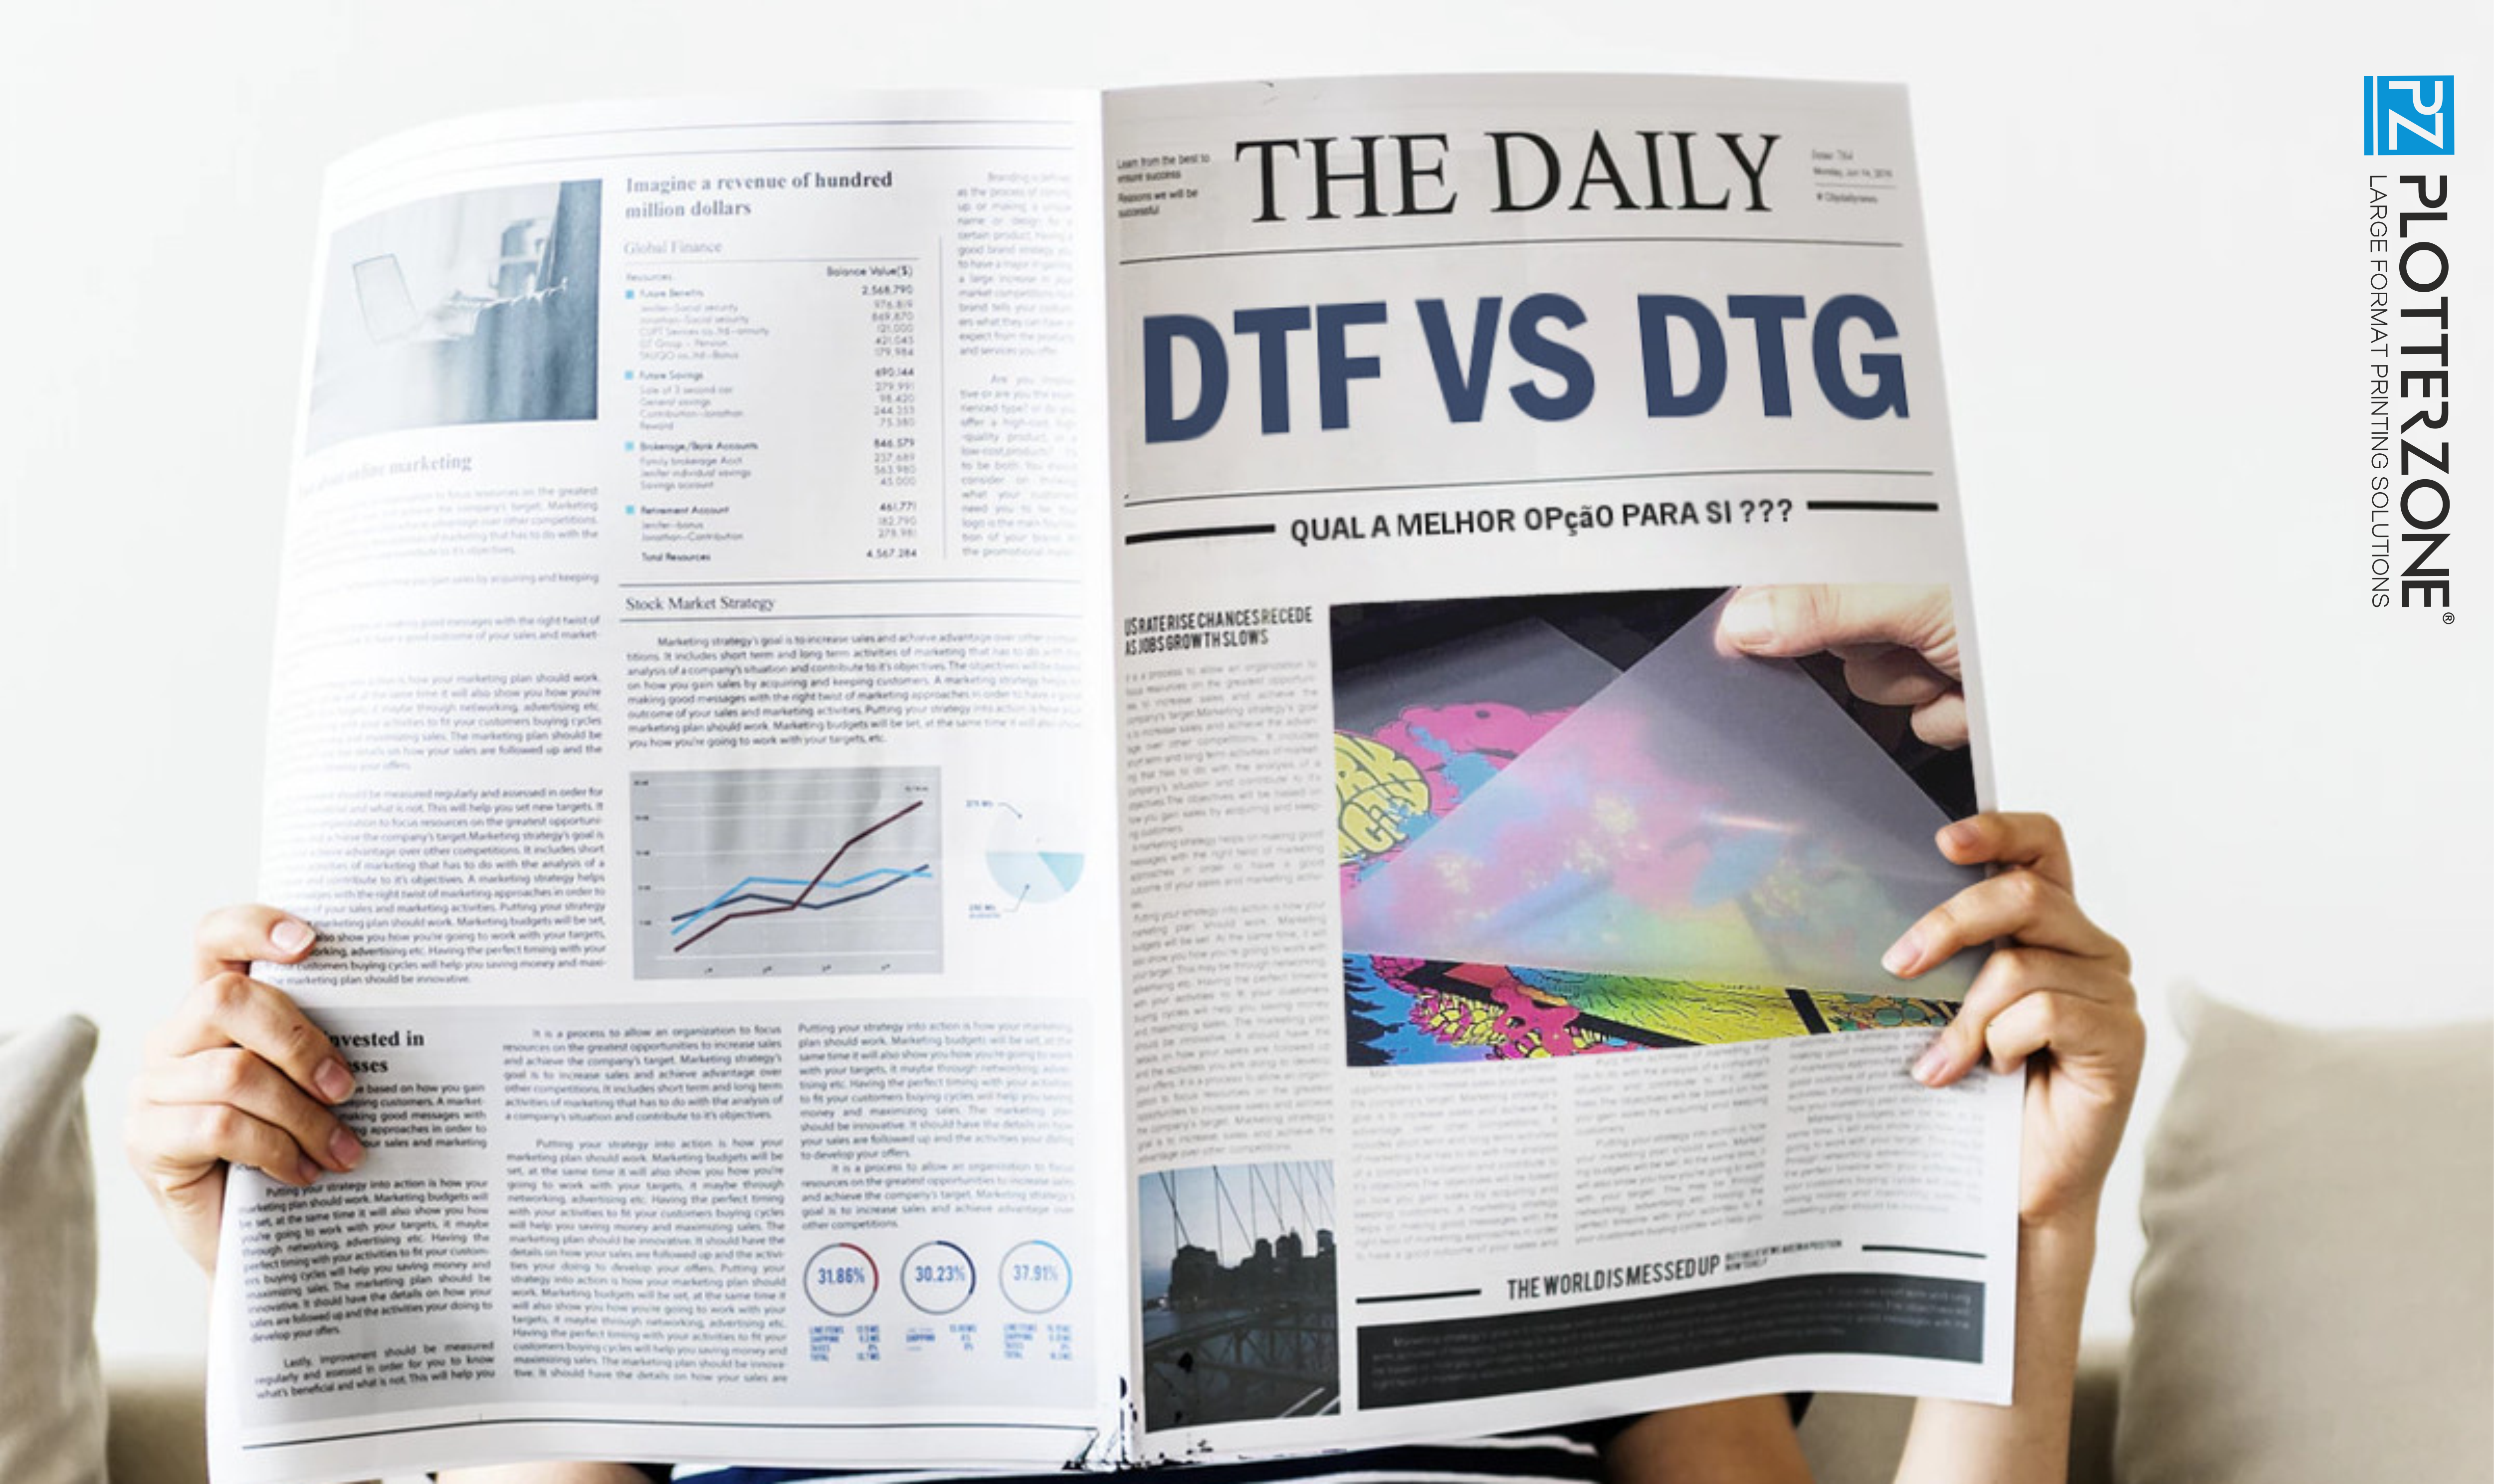 DTF ou DTG: descubra as principais diferenças entre estes métodos de impressão digital?